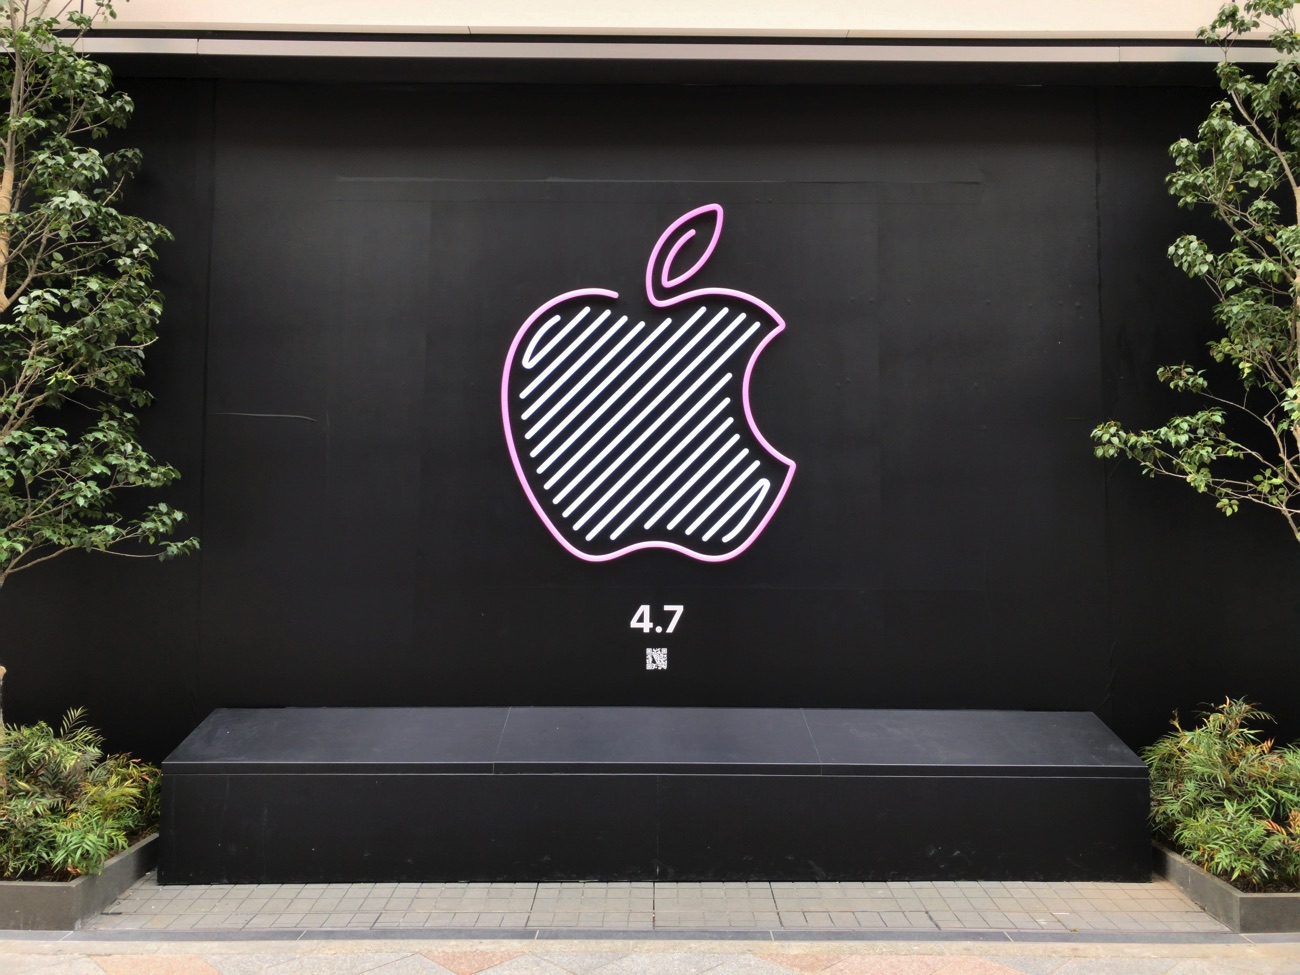 アップル 新宿に続く2店舗を謎のロゴで予告 新ストアはどこになる Engadget 日本版